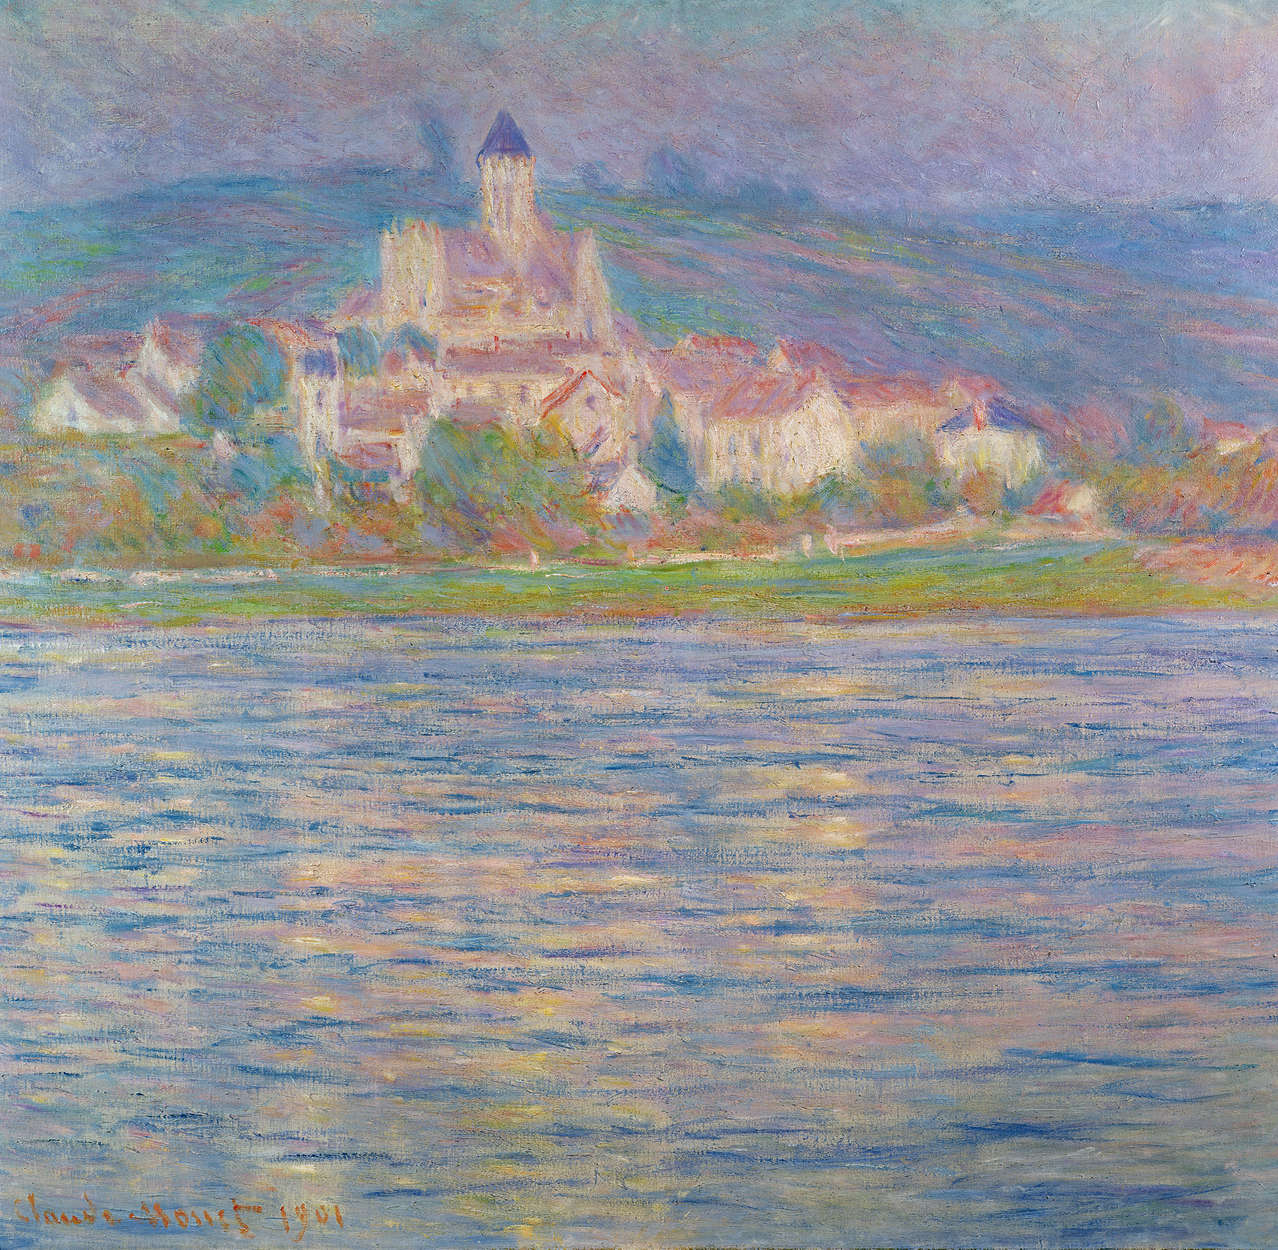             Bekijk Vétheuil" muurschildering van Claude Monet
        